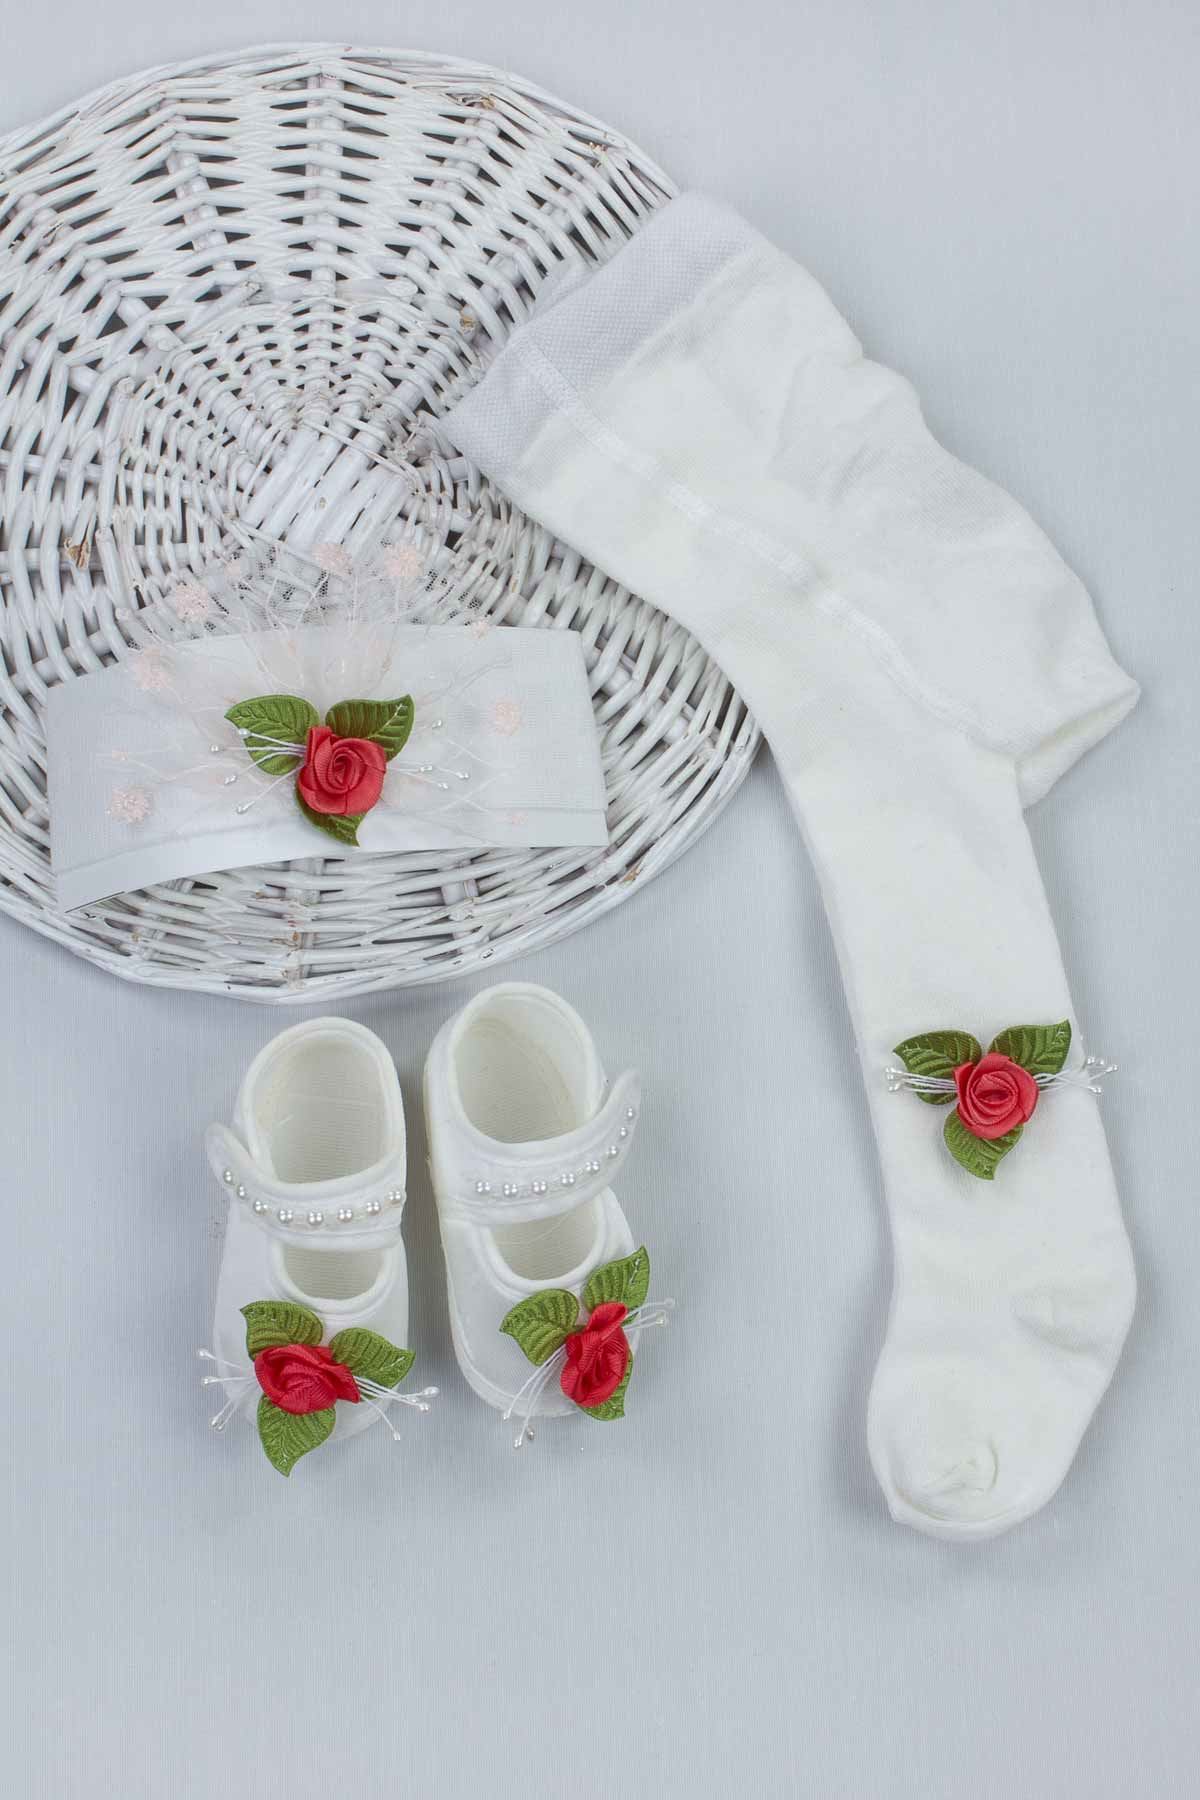 Narçiçeği Kız Bebek 3 lü Hediyelik Çorap Bandana Ayakkabı Set